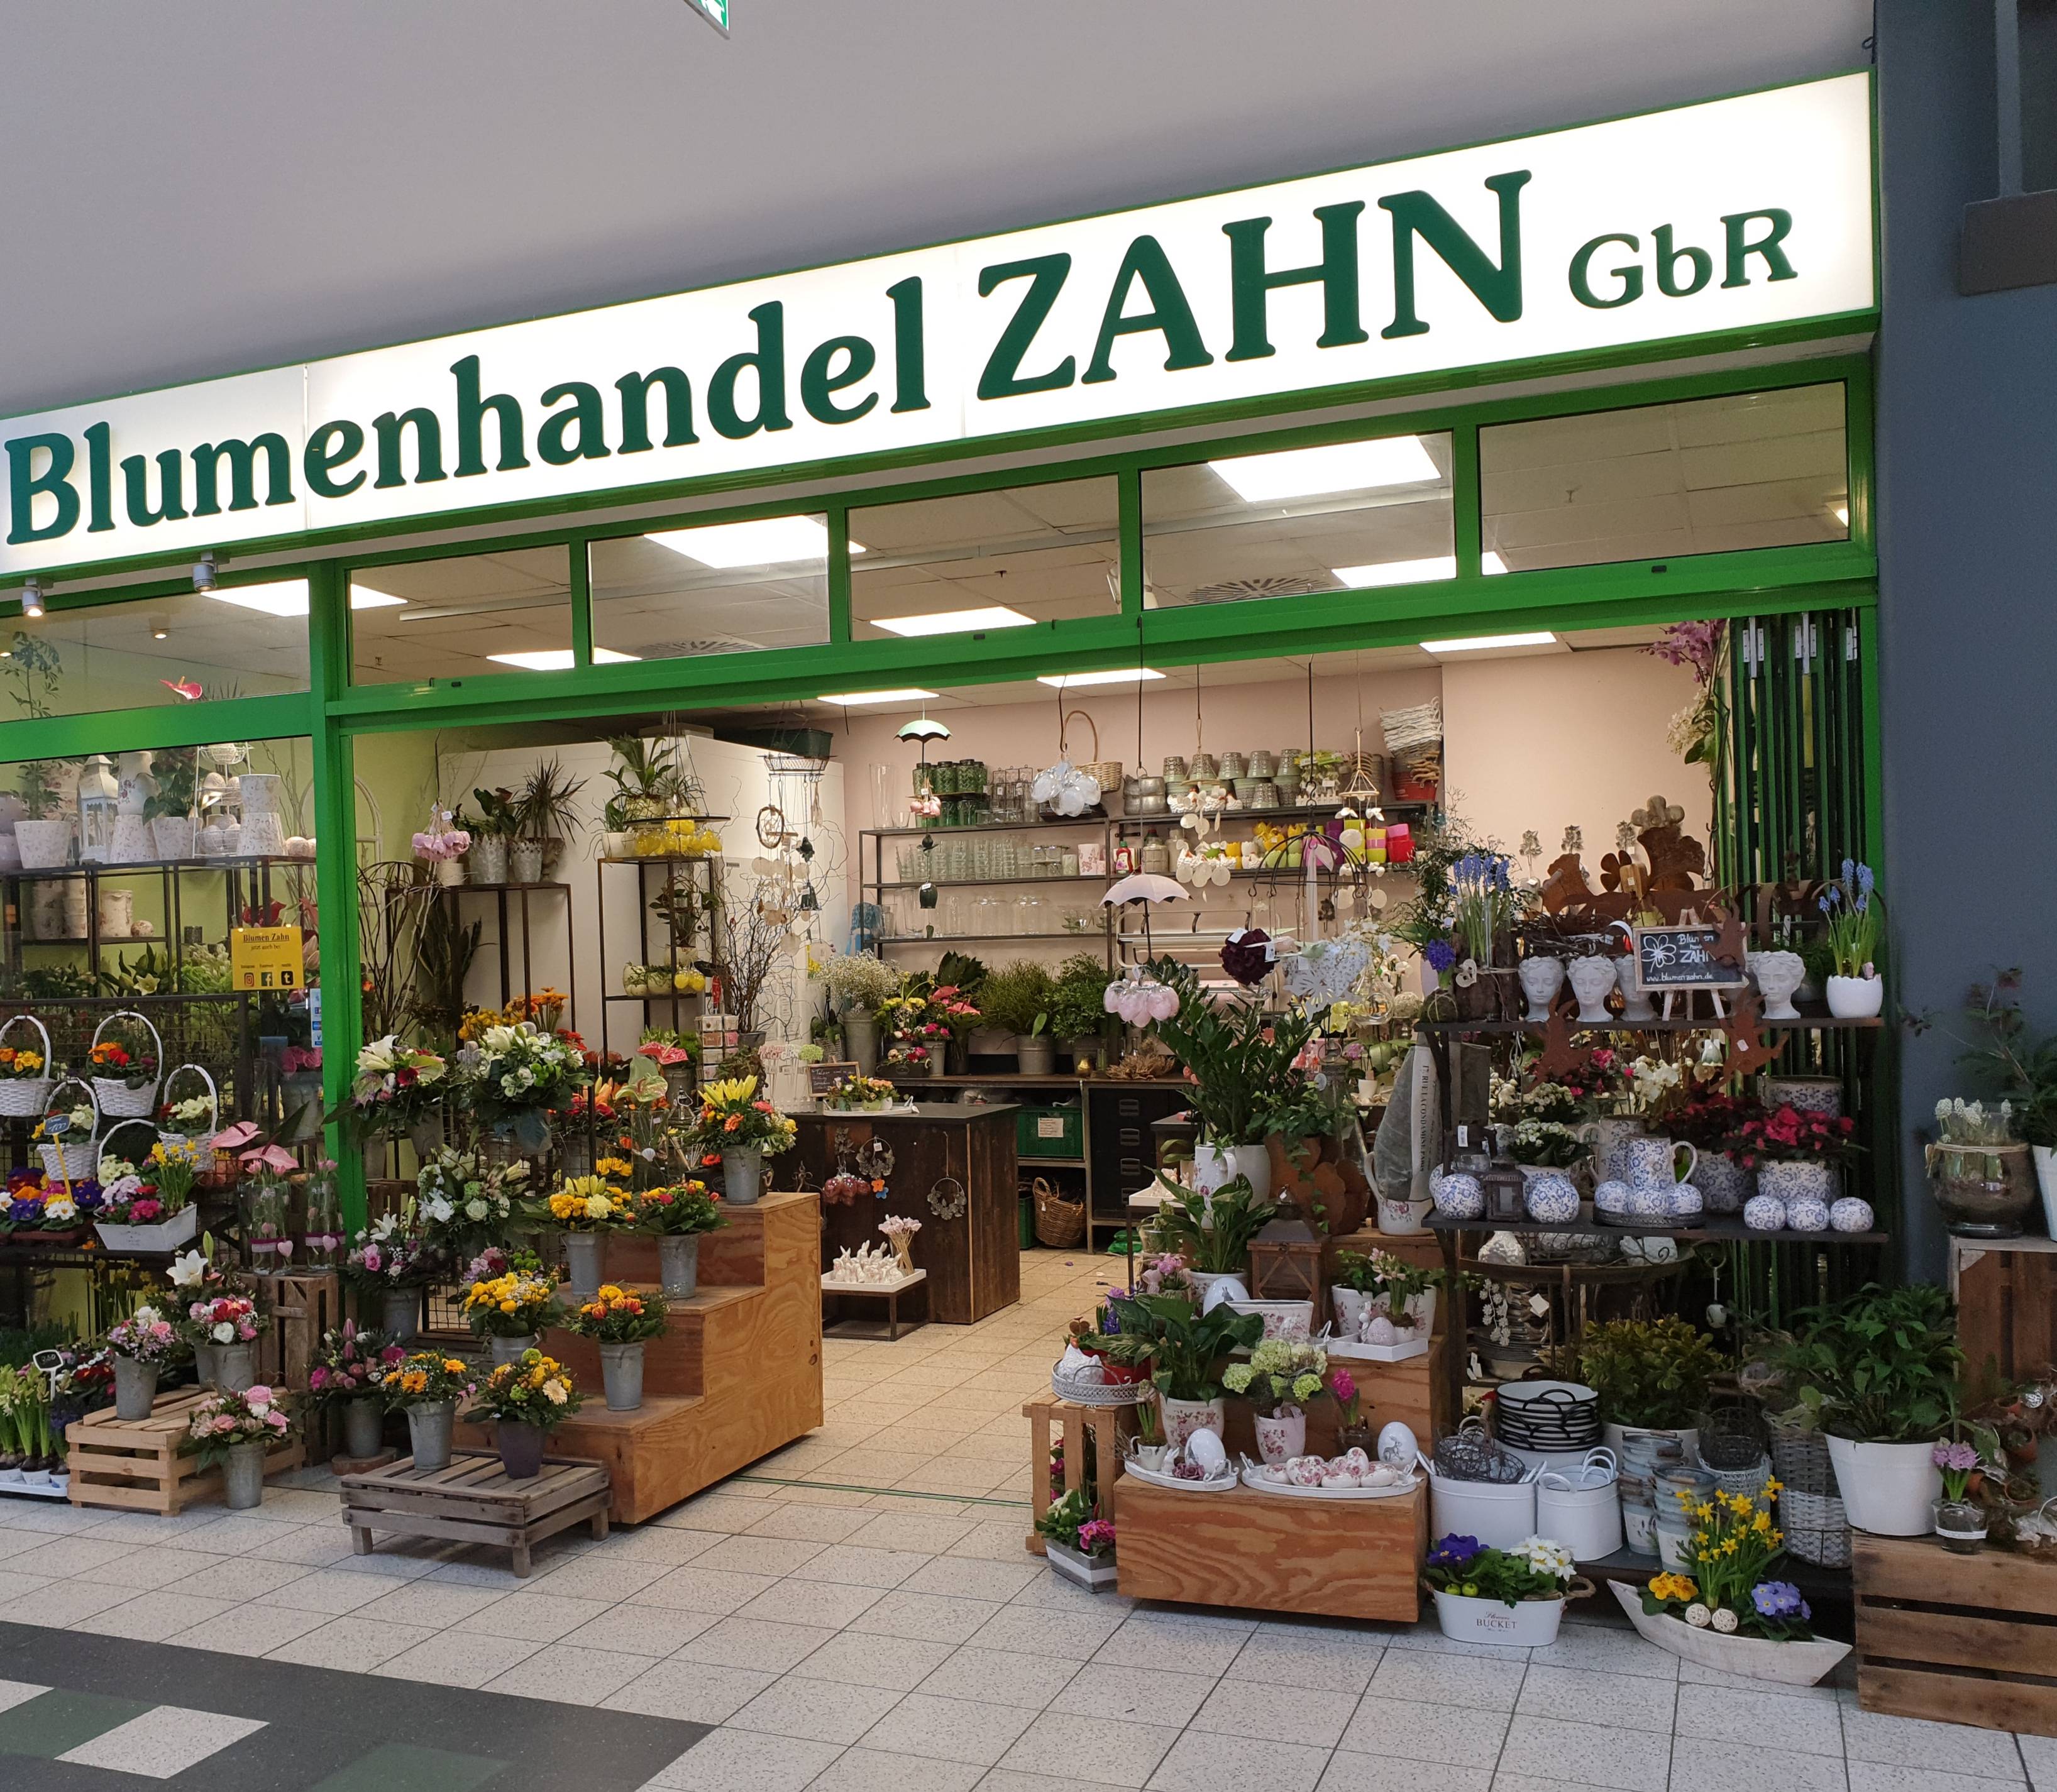 Bild 17 Blumenhandel Zahn GbR in Brandenburg an der Havel